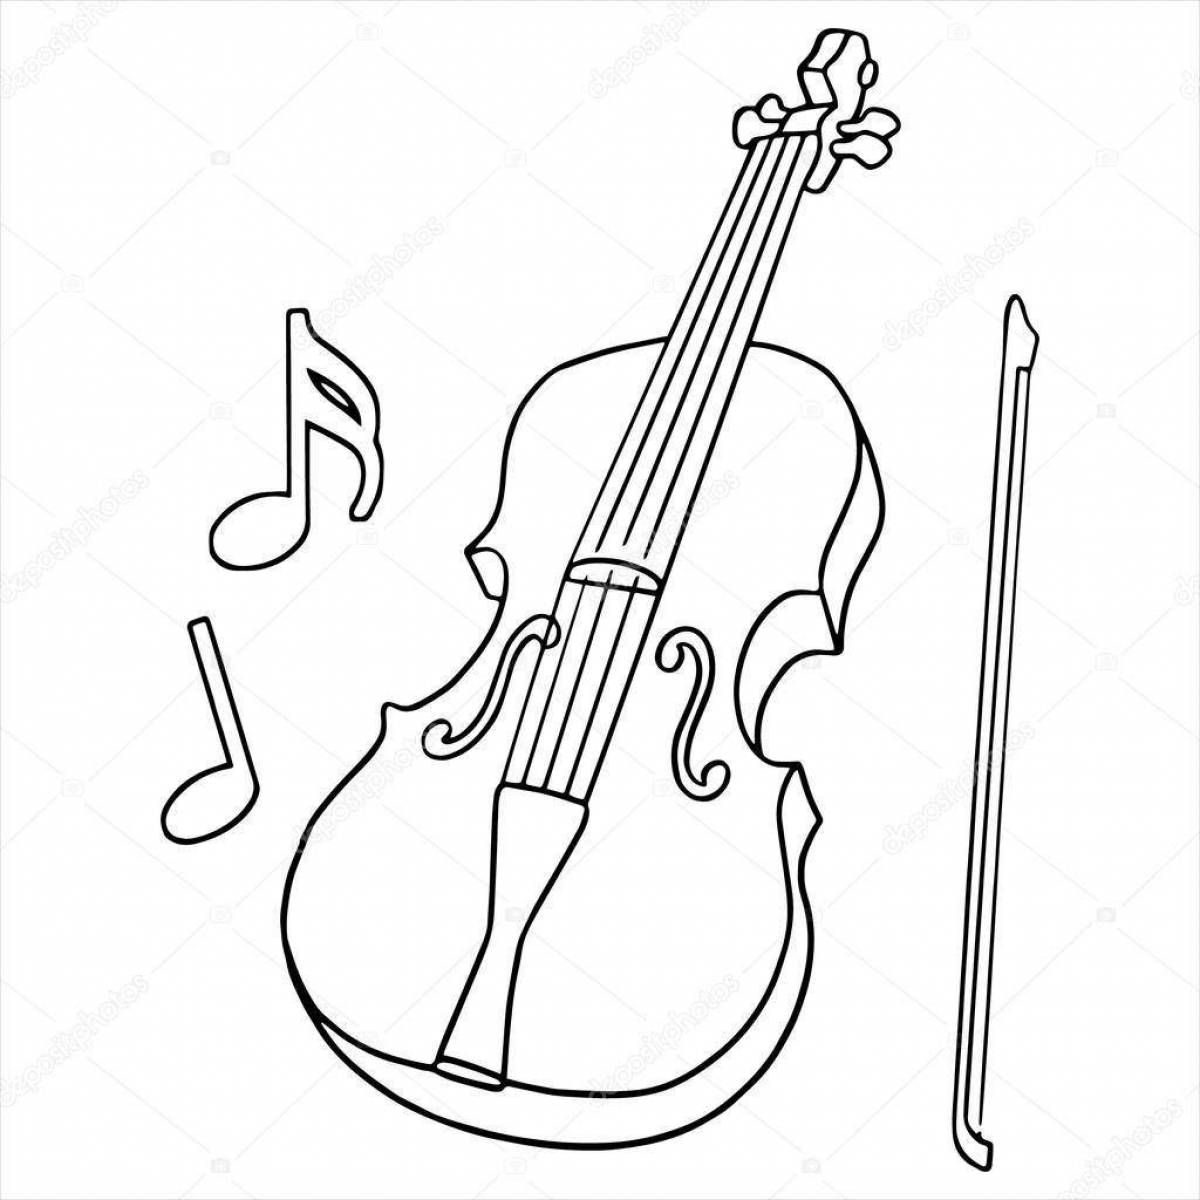 Funny violin and cello coloring book